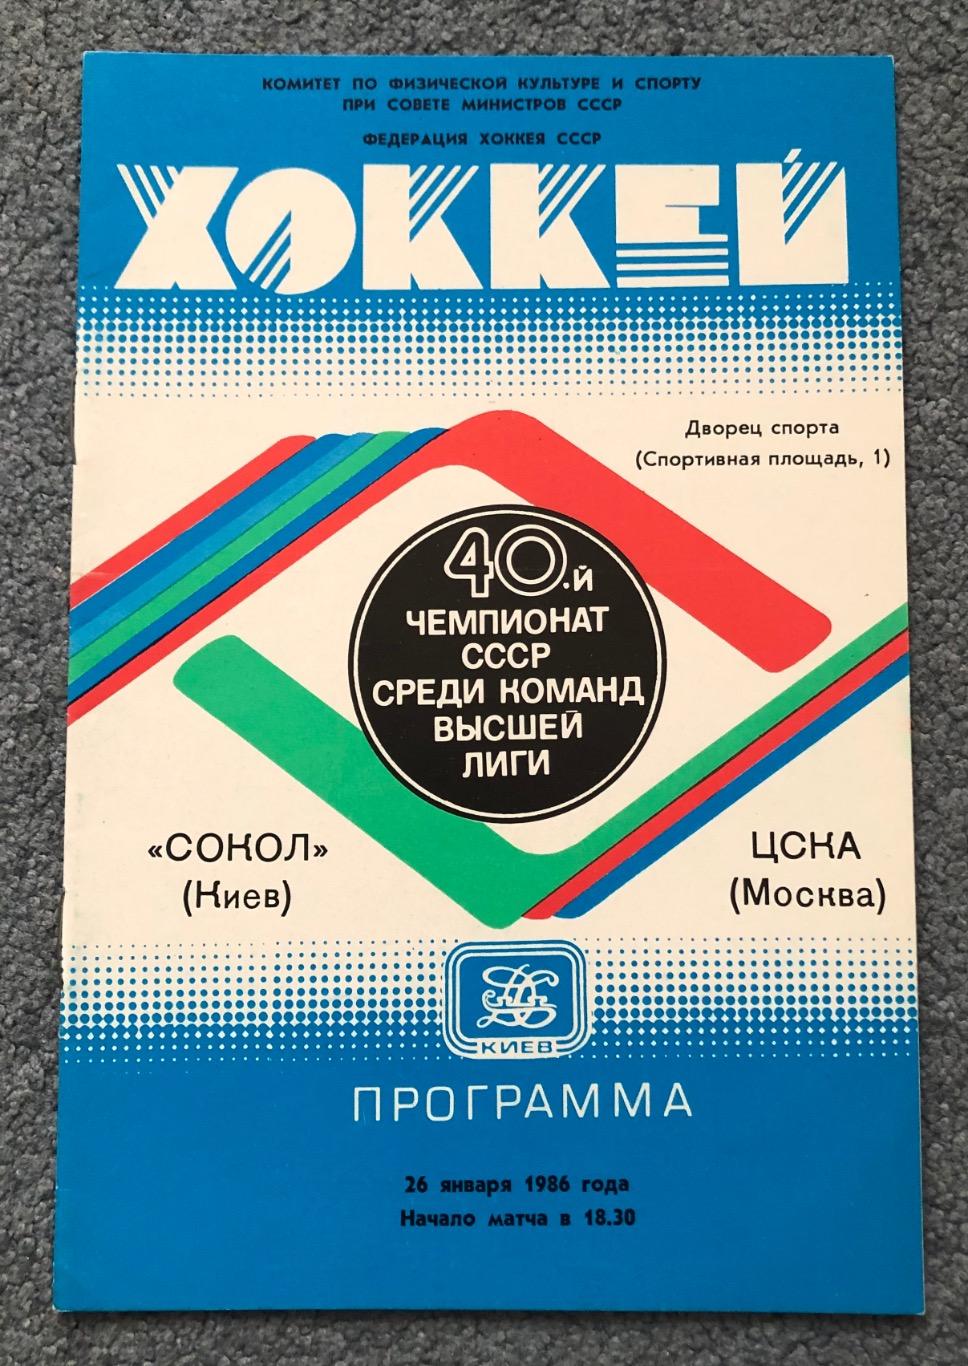 Сокол Киев - ЦСКА, 26.01.1986